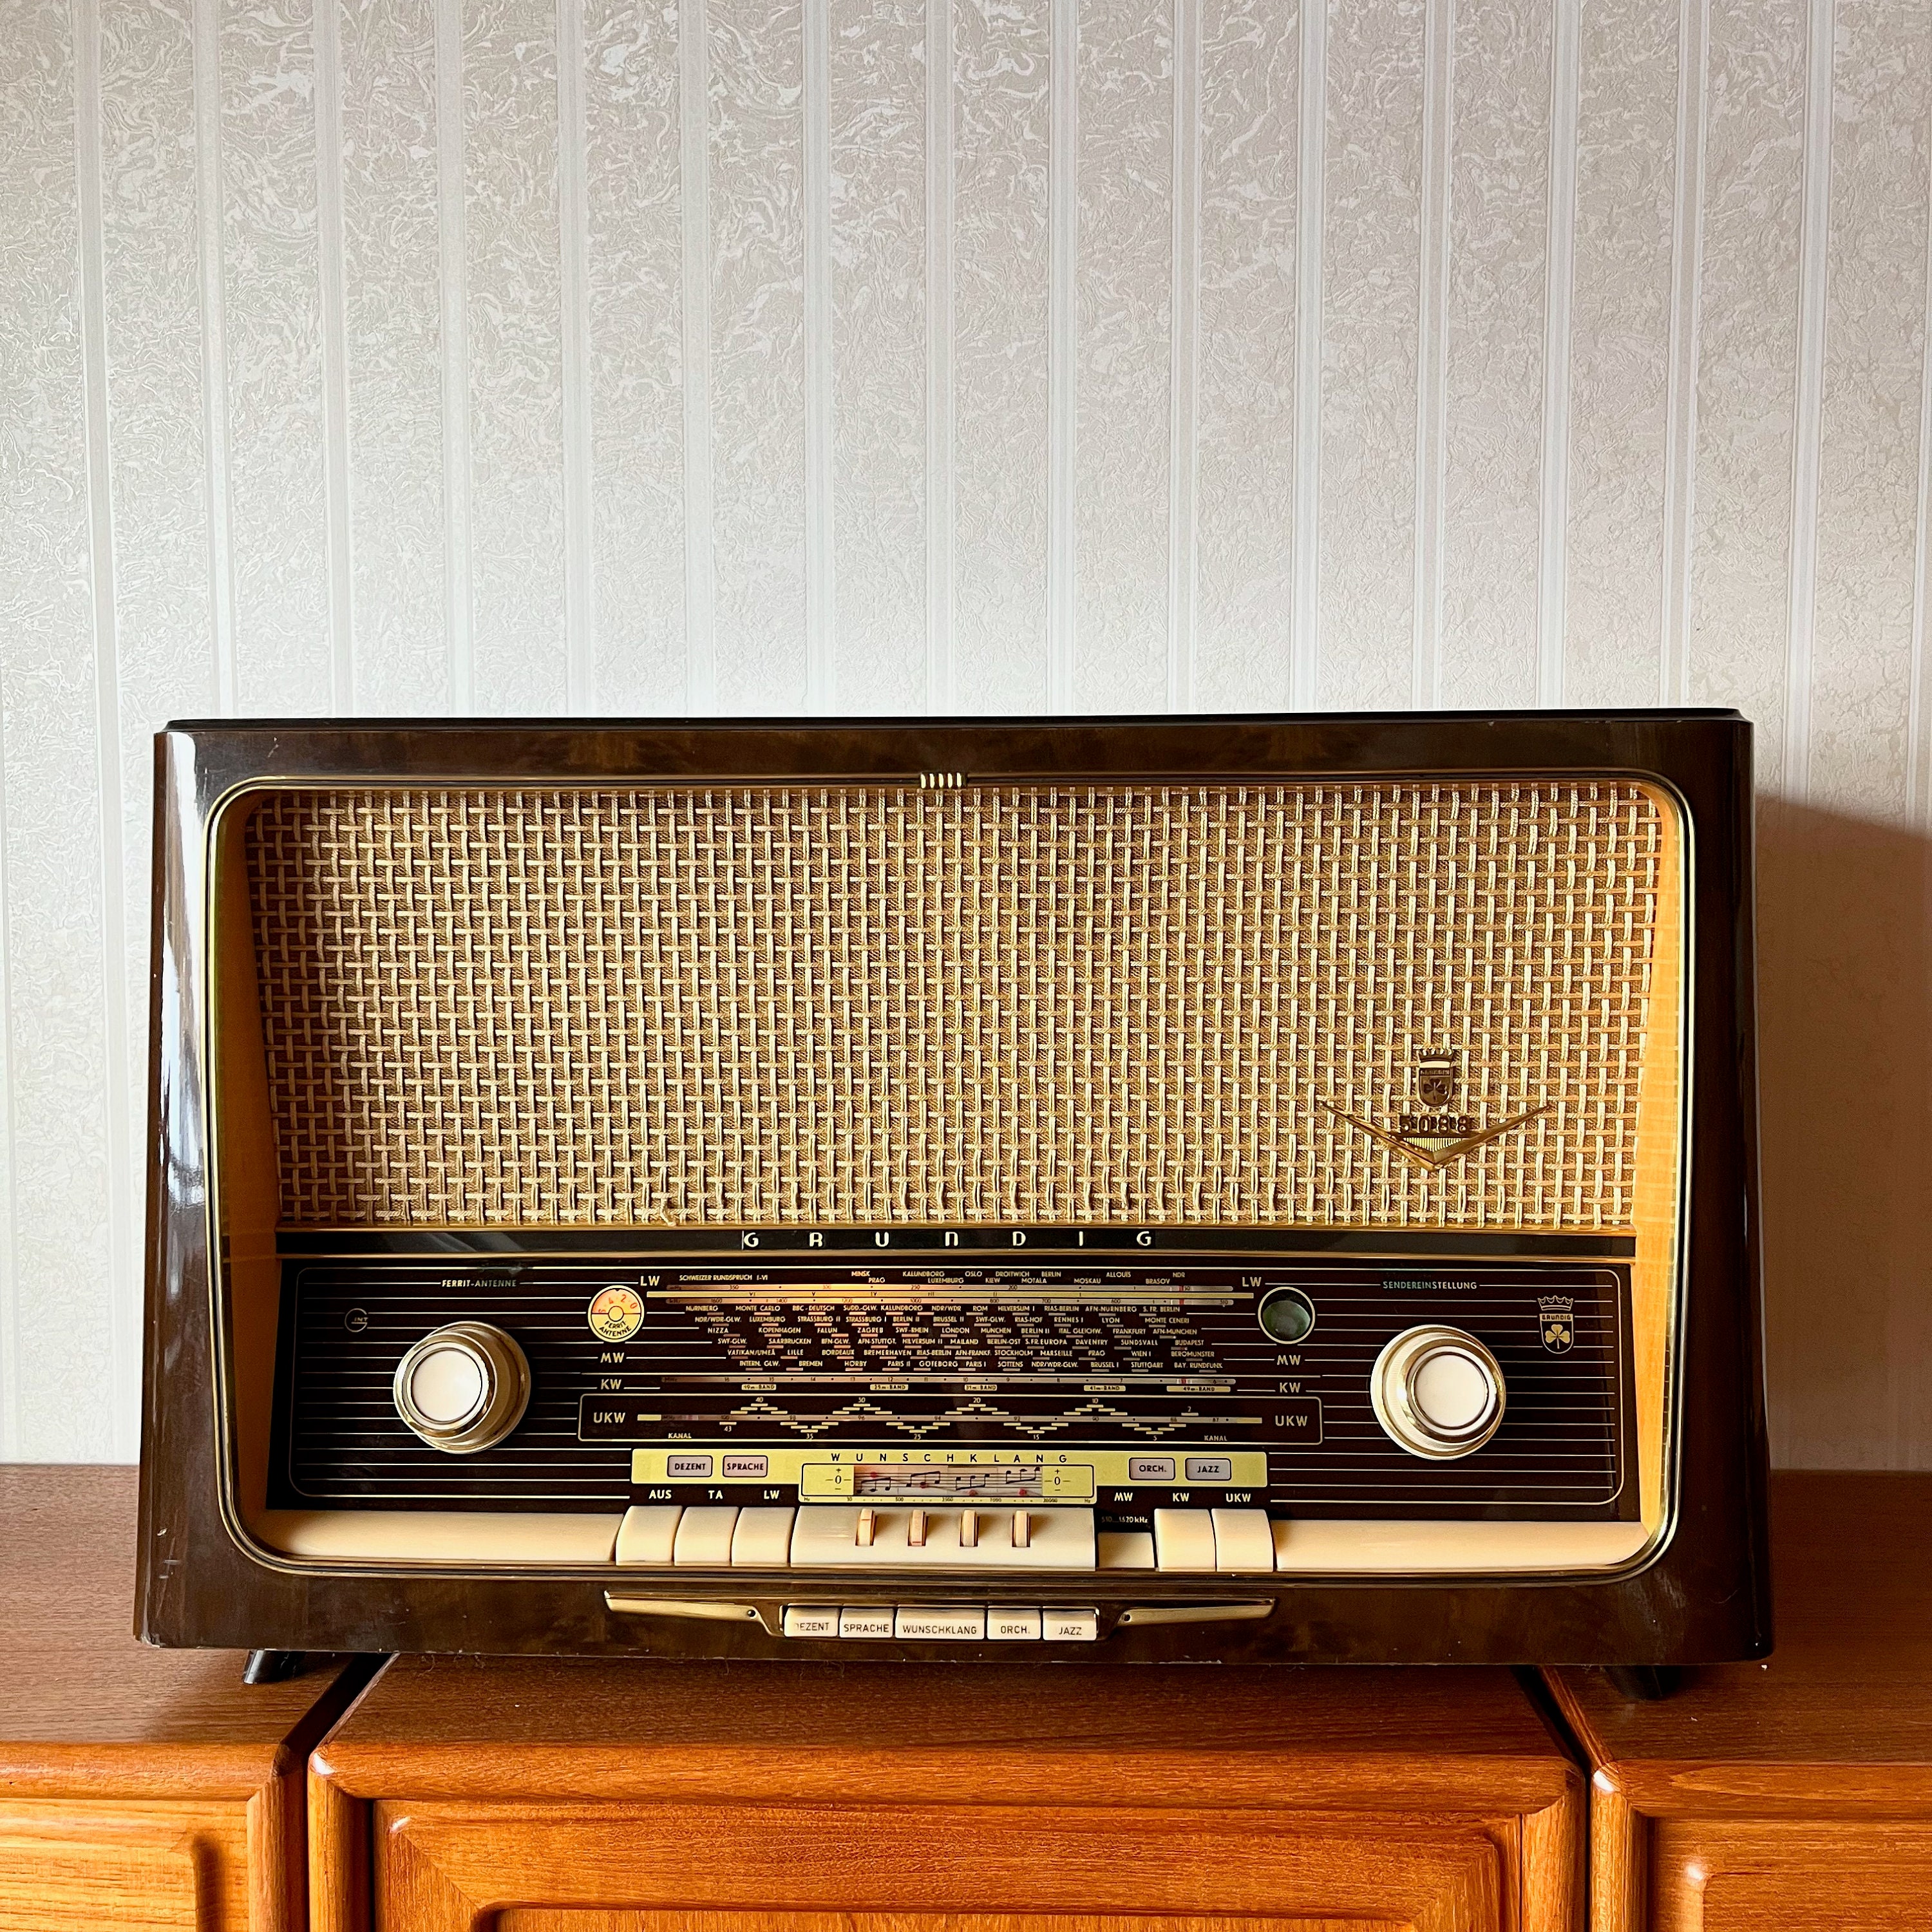 Instalamos RADIO imitación antigua en COCHE CLÁSICO - Madrid Audio